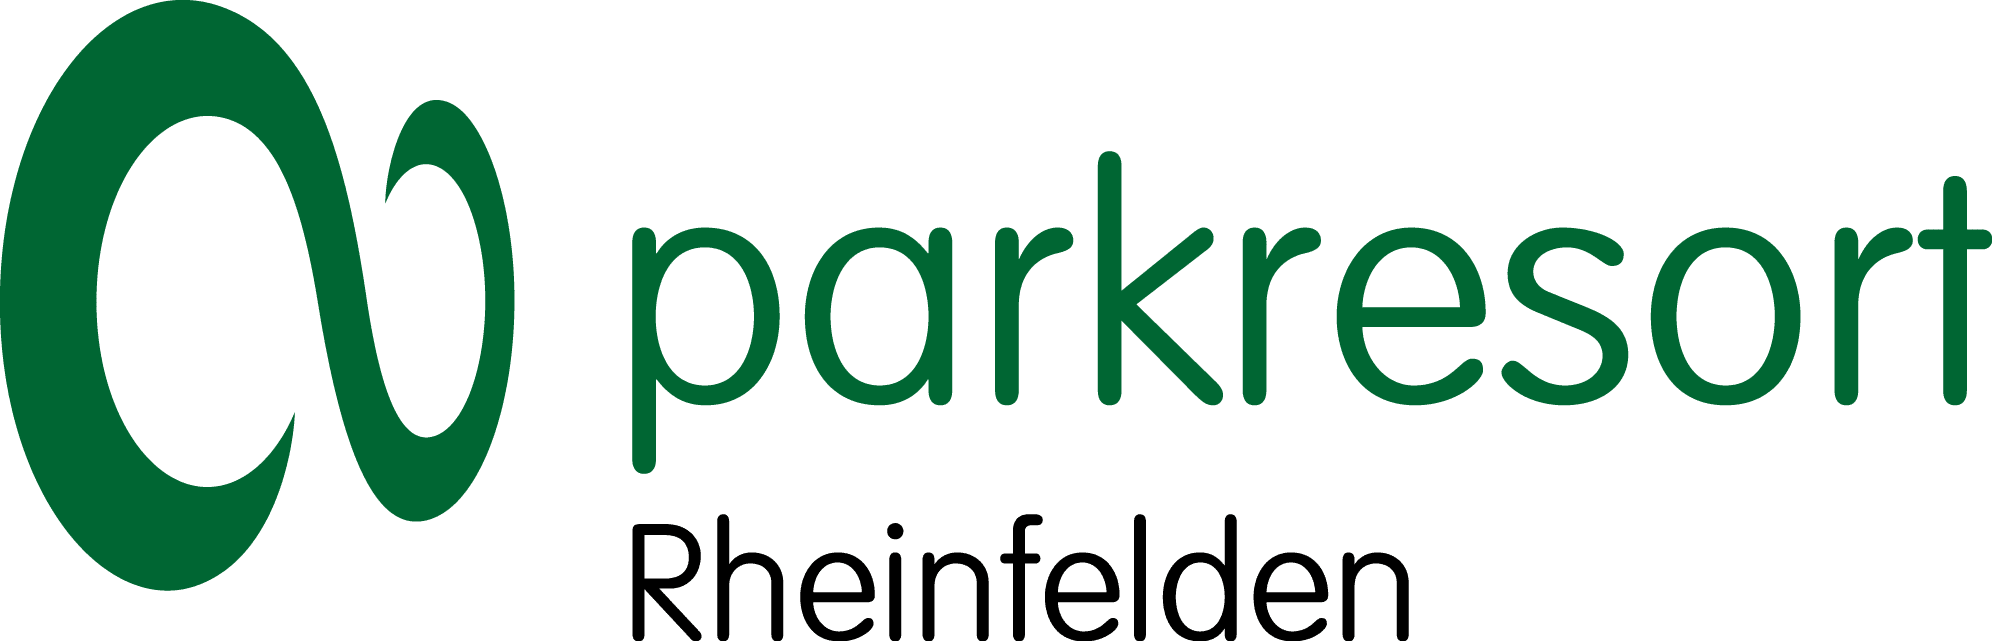 Parkresort Rheinfelden Holding AG